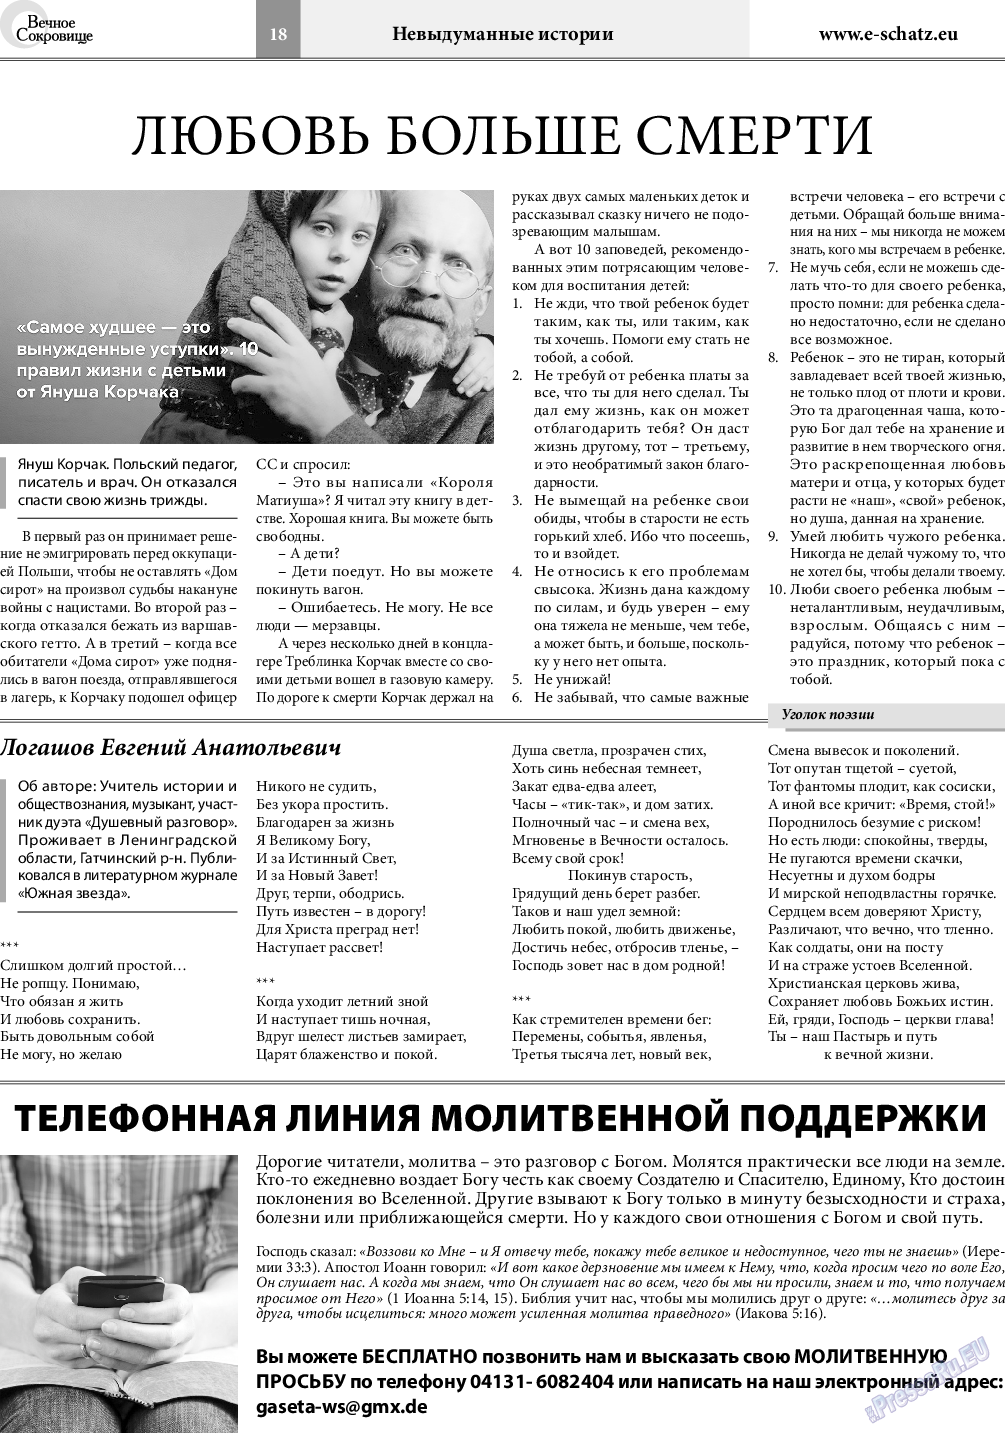 Вечное сокровище, газета. 2019 №3 стр.18